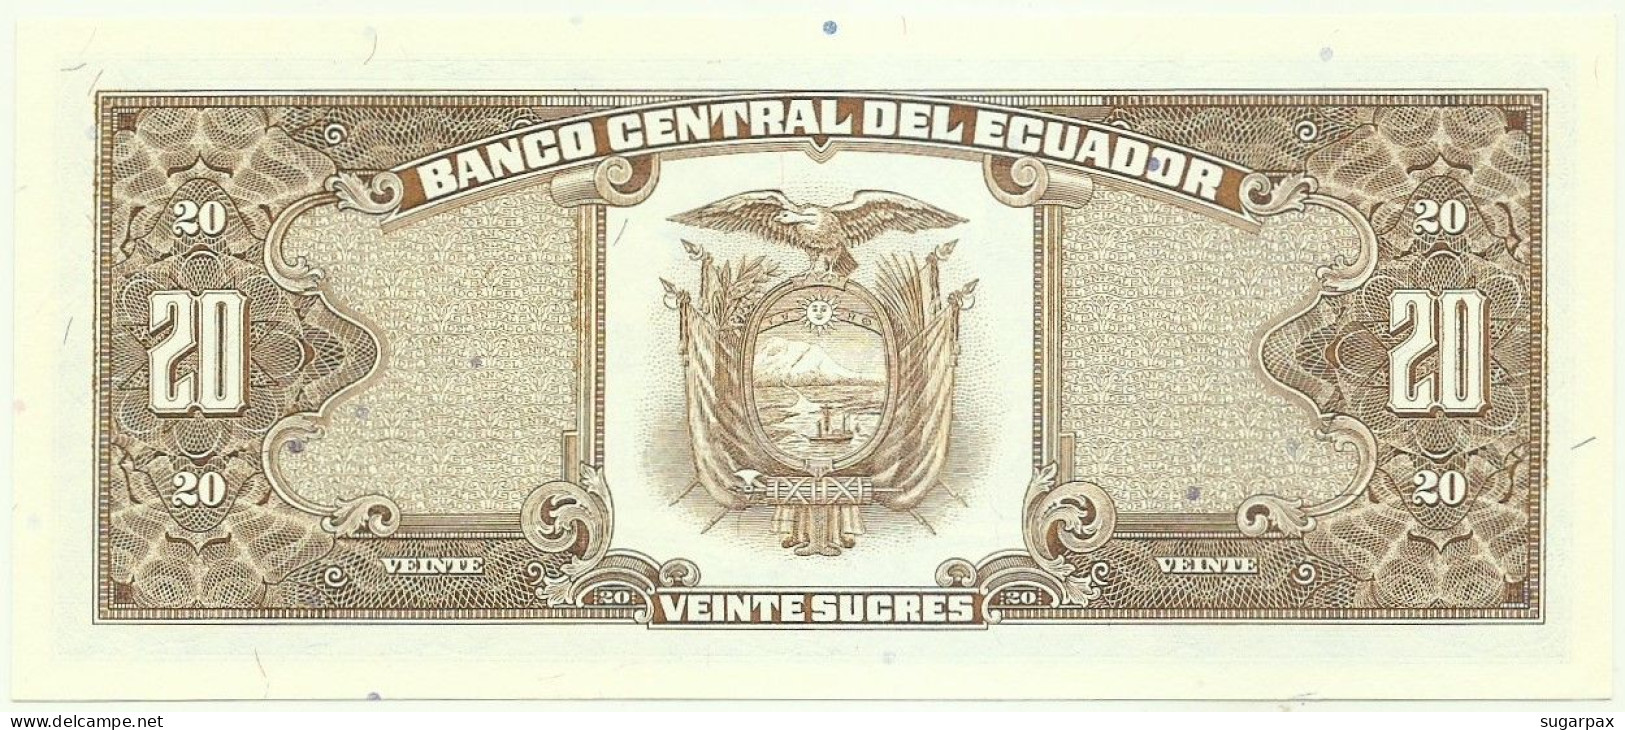 ECUADOR - 20 SUCRES - 22.11.1988 - Pick 121A - UNC. - Série LQ - Equateur